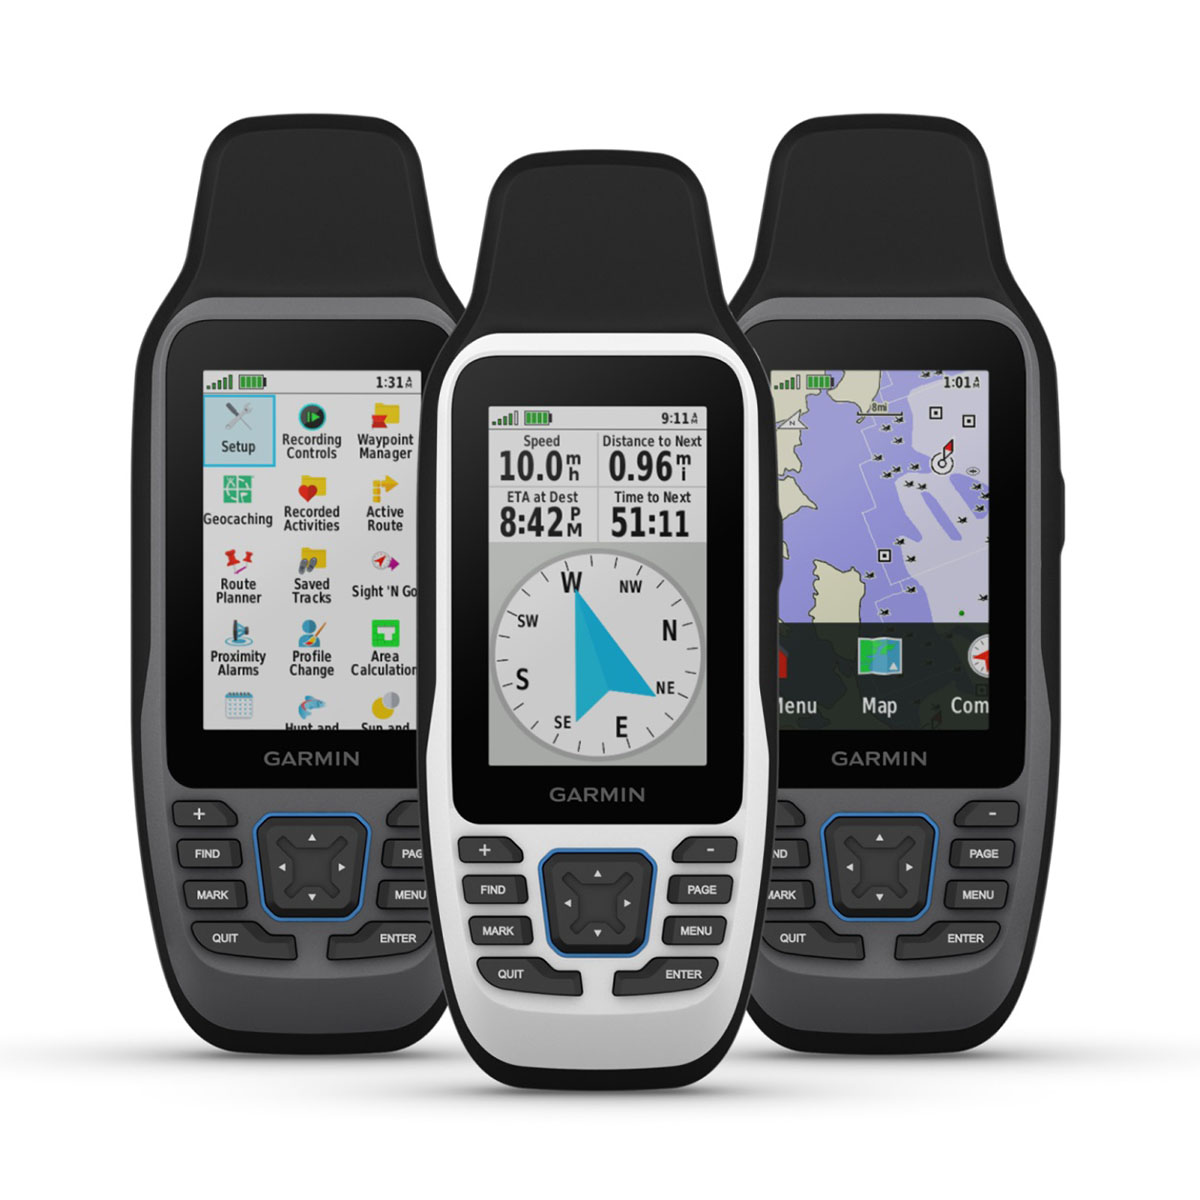 Garmin сповістила про випуск серії портативних GPS-навігаторів GPSMAP® 79, покликаних забезпечити рибалок та мореплавців важливими, легкими у використанні навігаційними інструментами